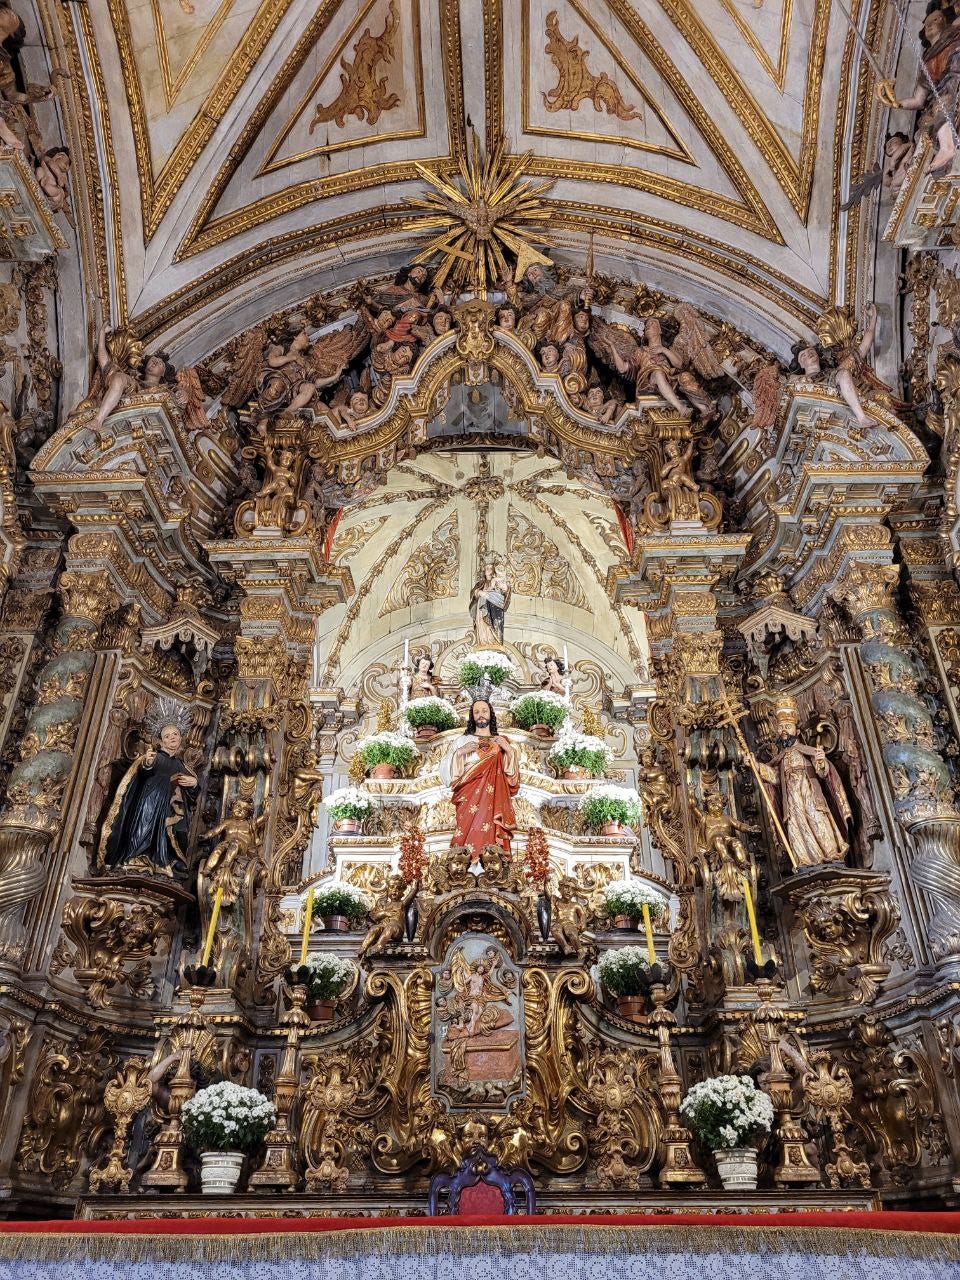 o altar riquíssimo em detalhes, com santos nas laterais, anjos na parte de cima, Jesus à frente e a Nossa Senhora bem no alto, tudo muito revestido de ouro.